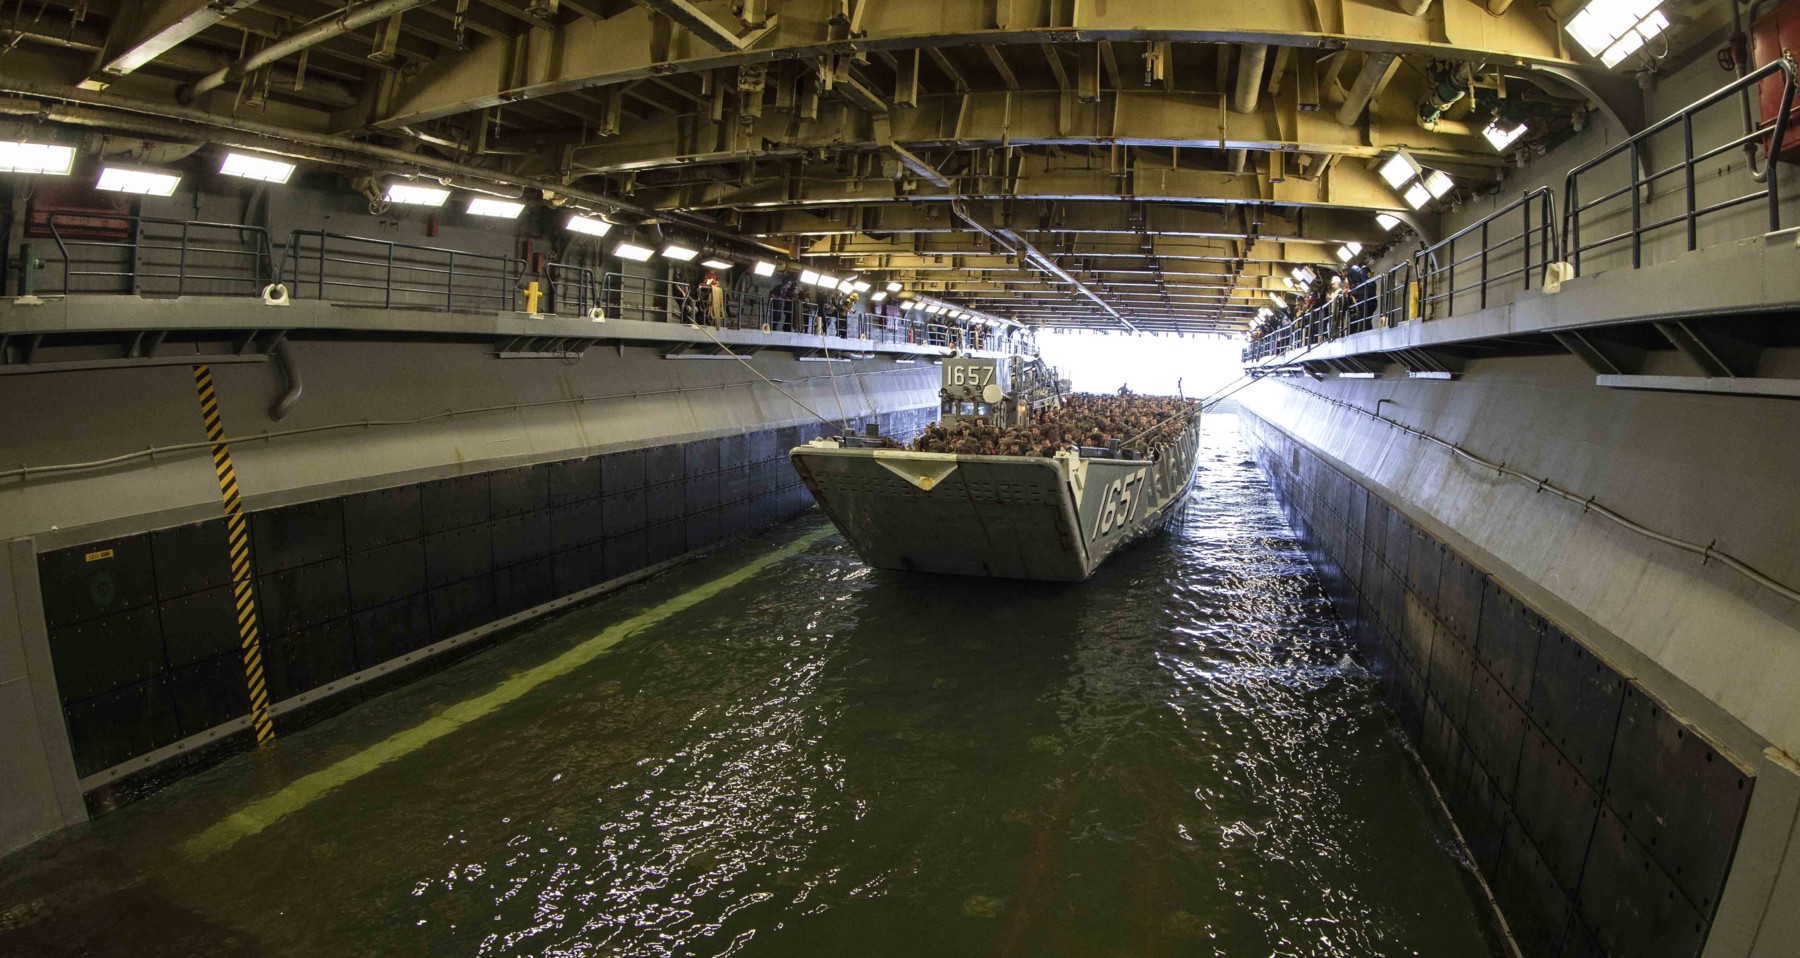 wasp class amphibious assault ship landing helicopter dock us navy lcu well deck 193c